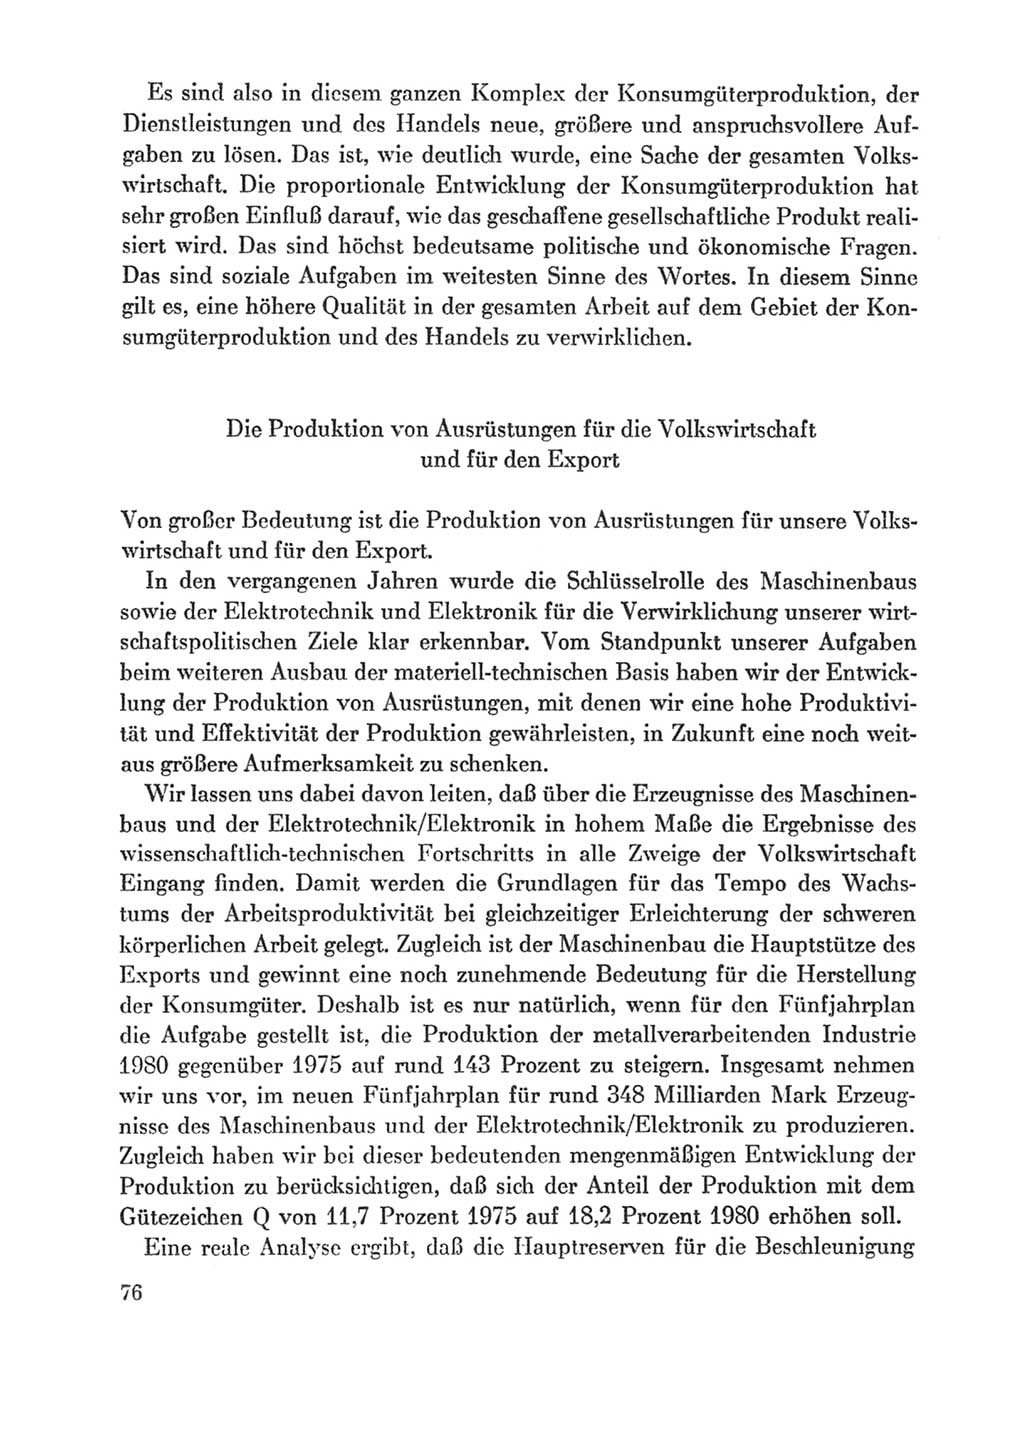 Protokoll der Verhandlungen des Ⅸ. Parteitages der Sozialistischen Einheitspartei Deutschlands (SED) [Deutsche Demokratische Republik (DDR)] 1976, Band 1, Seite 76 (Prot. Verh. Ⅸ. PT SED DDR 1976, Bd. 1, S. 76)